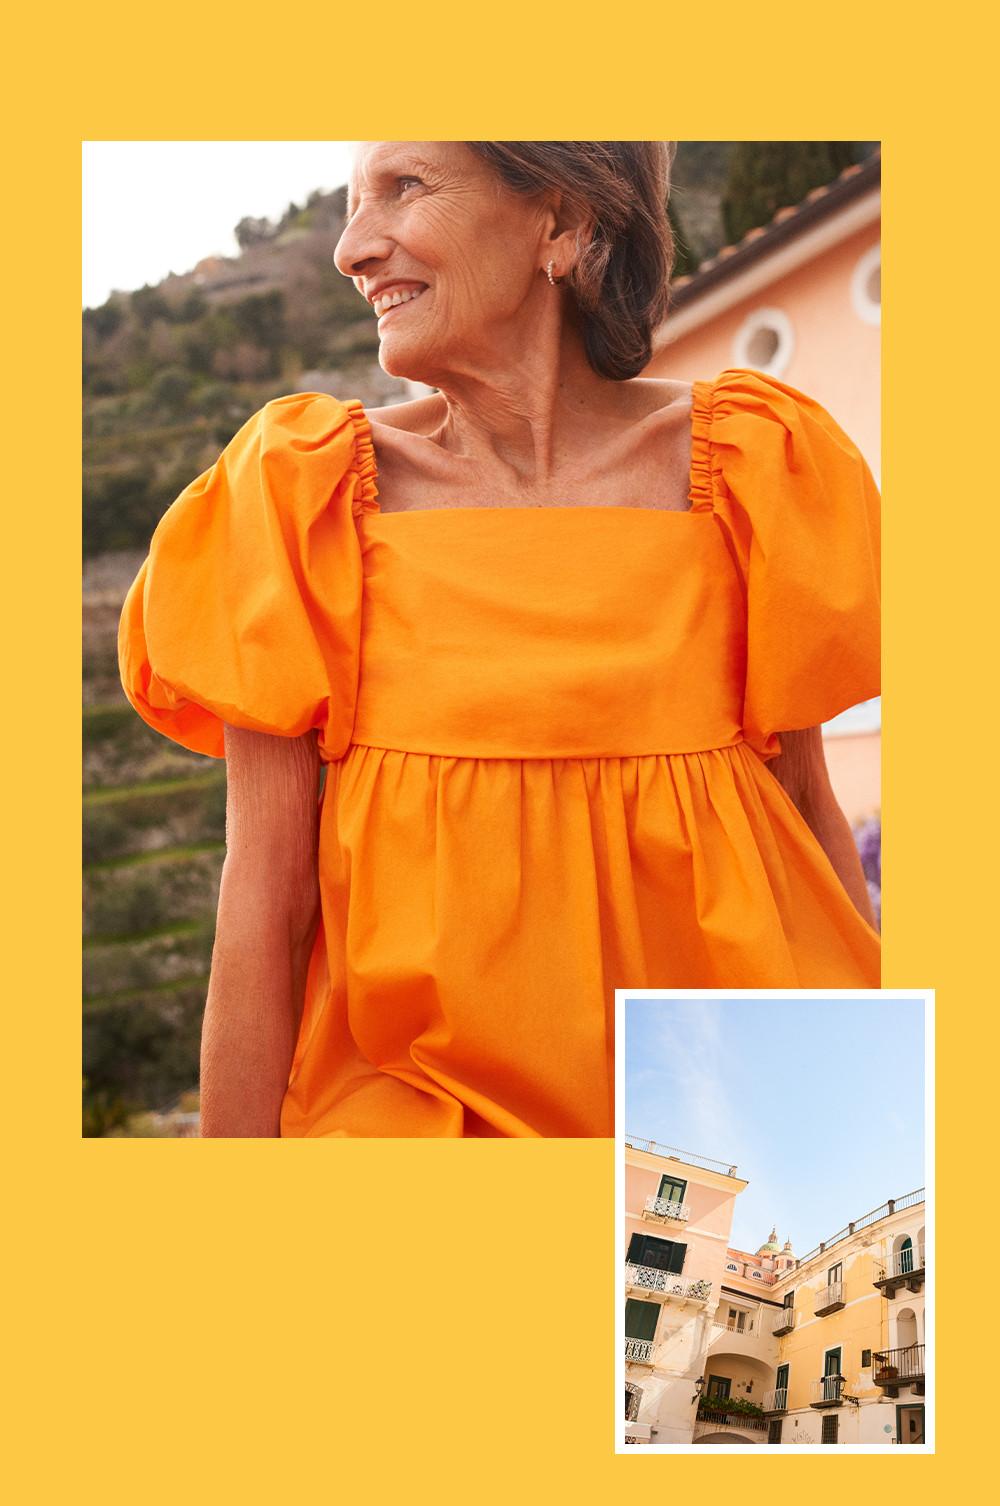 Žena v popelínových šatech s nabíranými rukávy v oranžové barvě